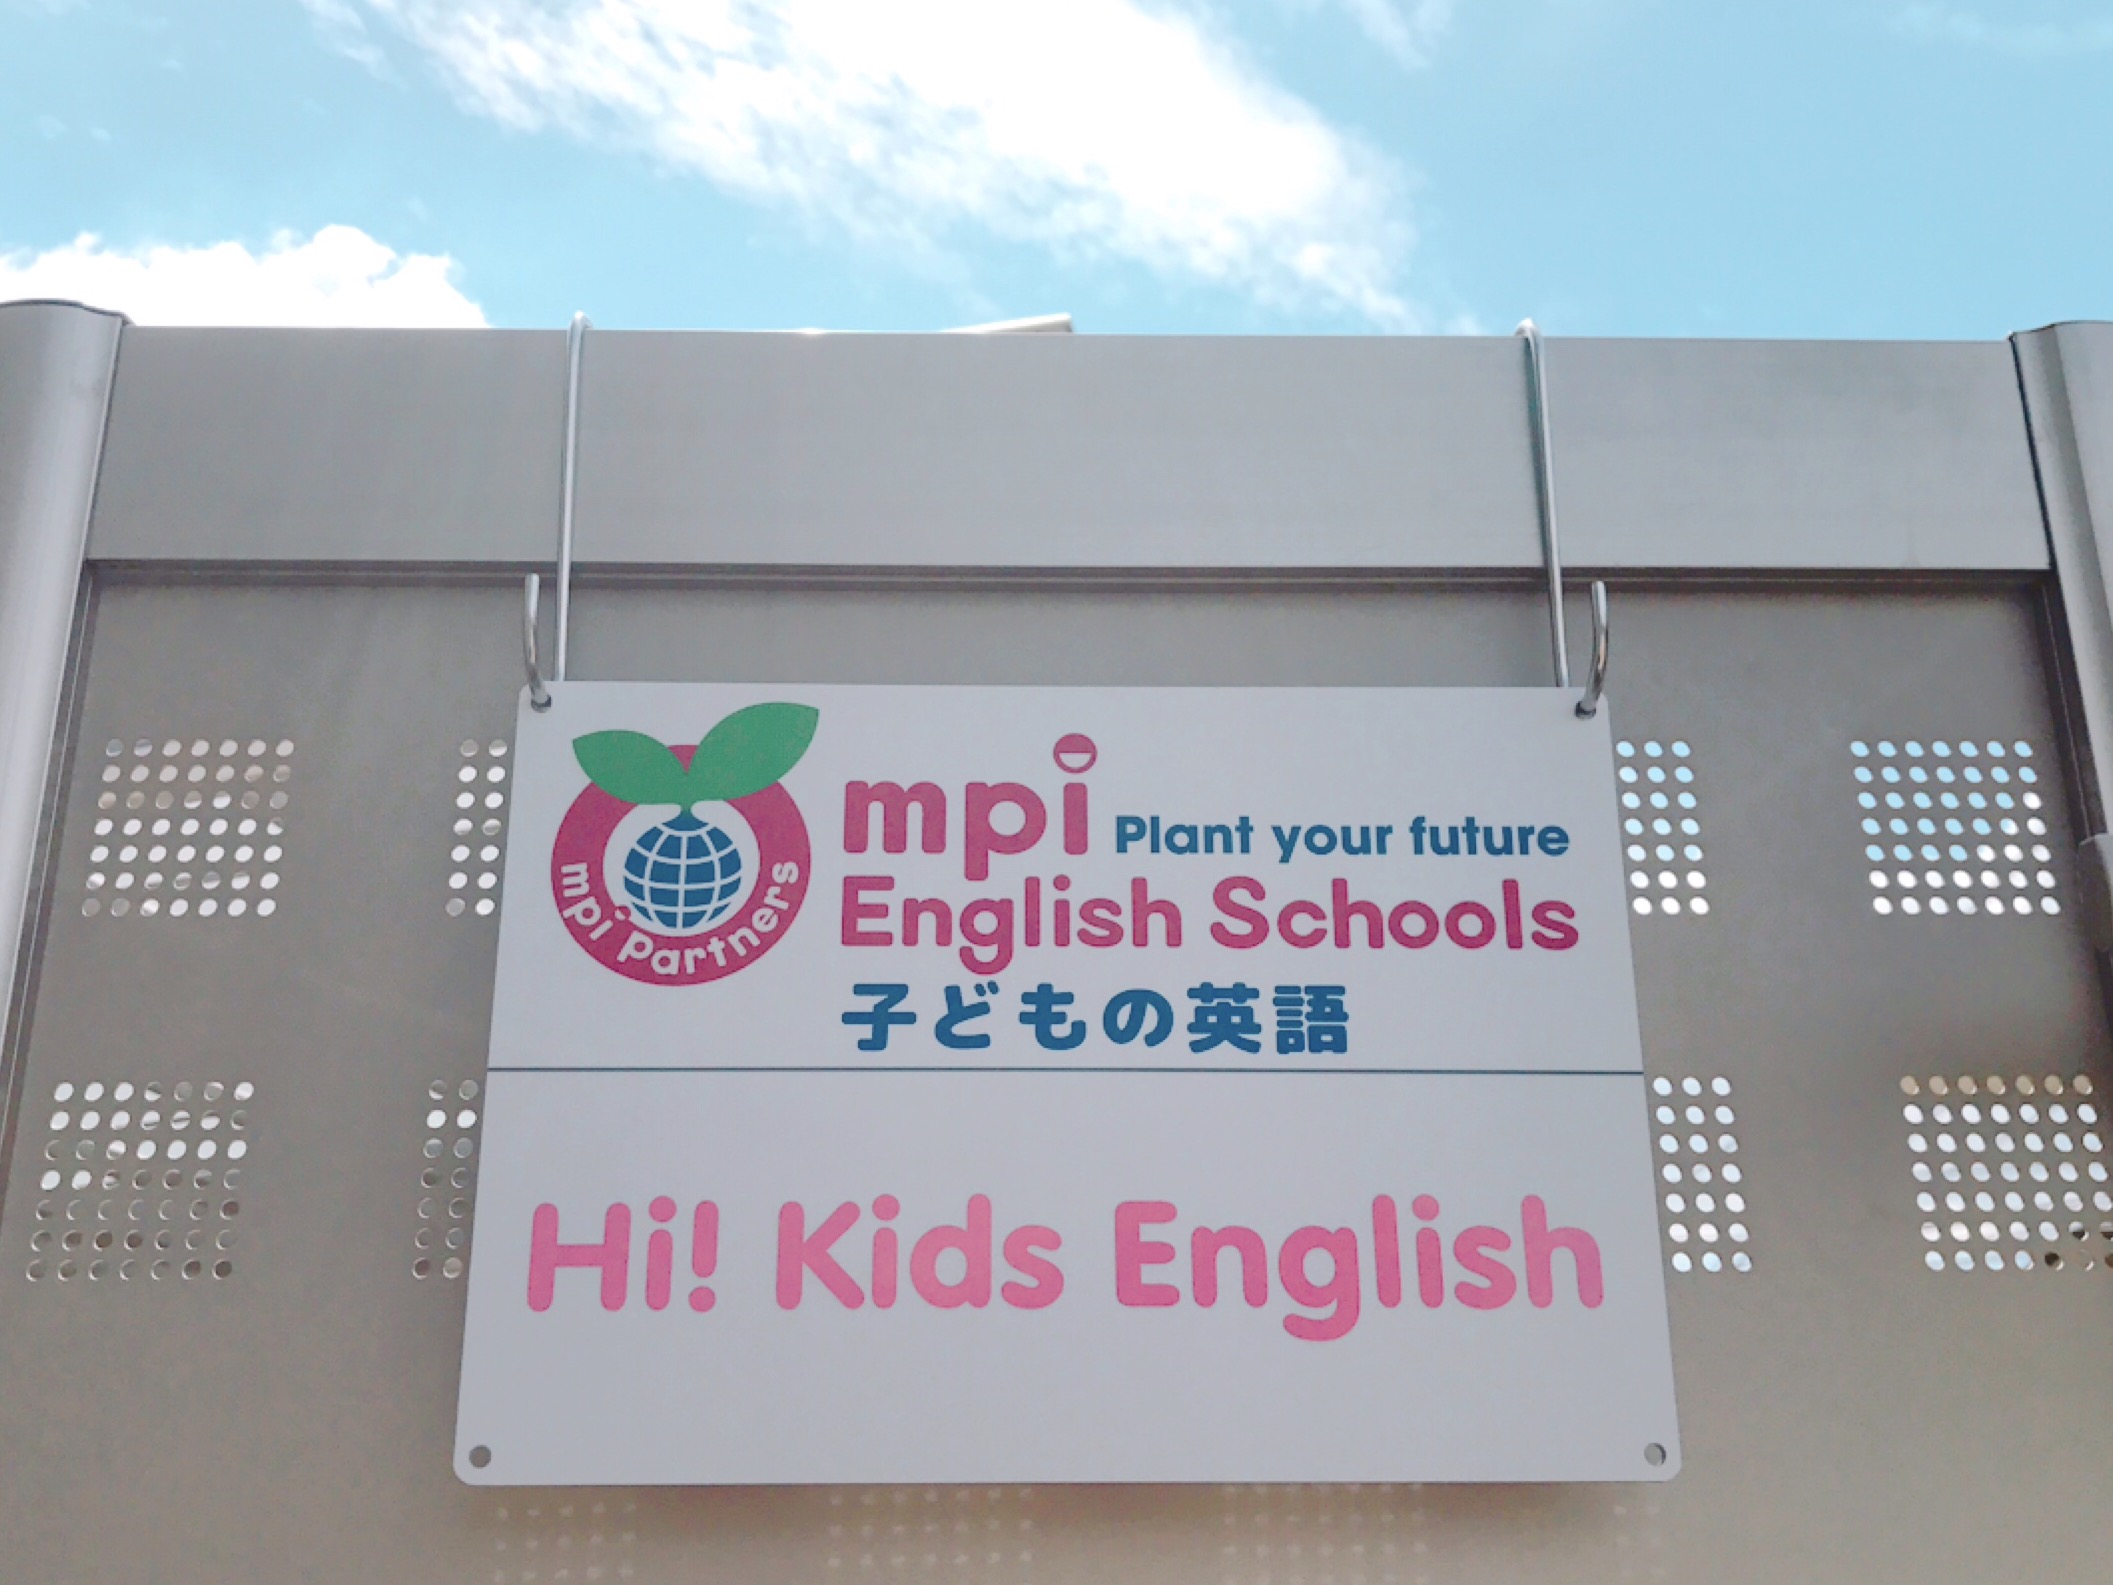 Hi! Kids English